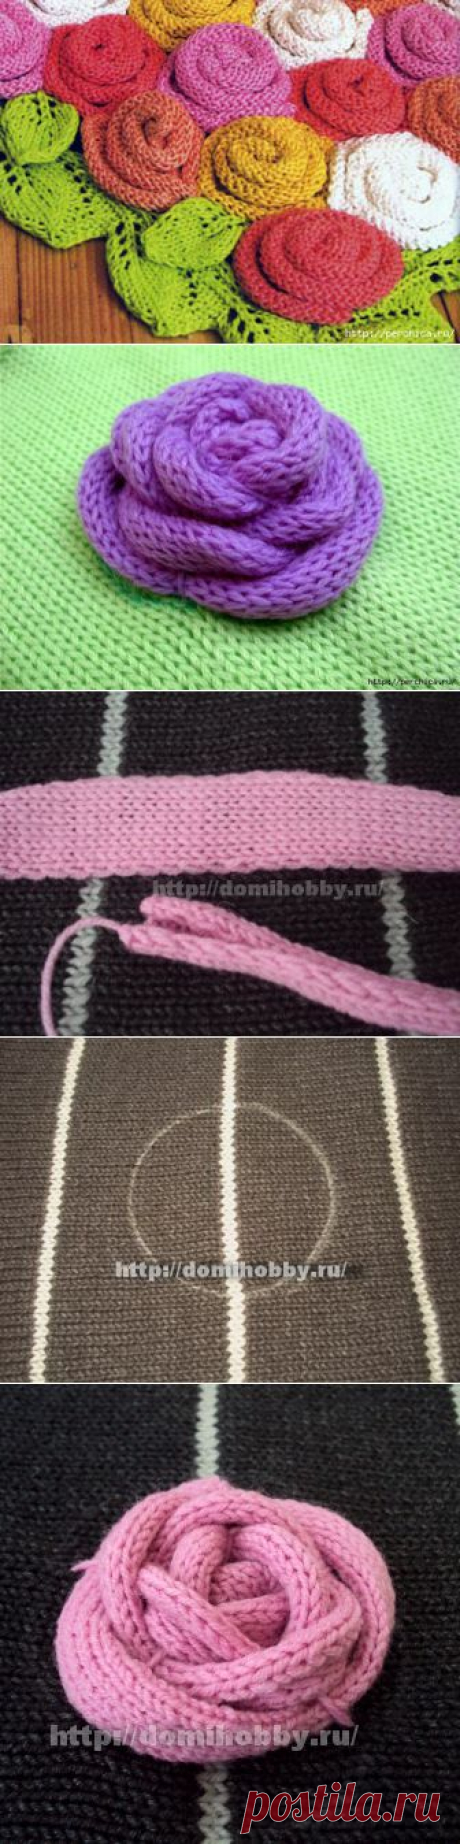 Как сформировать цветы из шнура связанного спицами